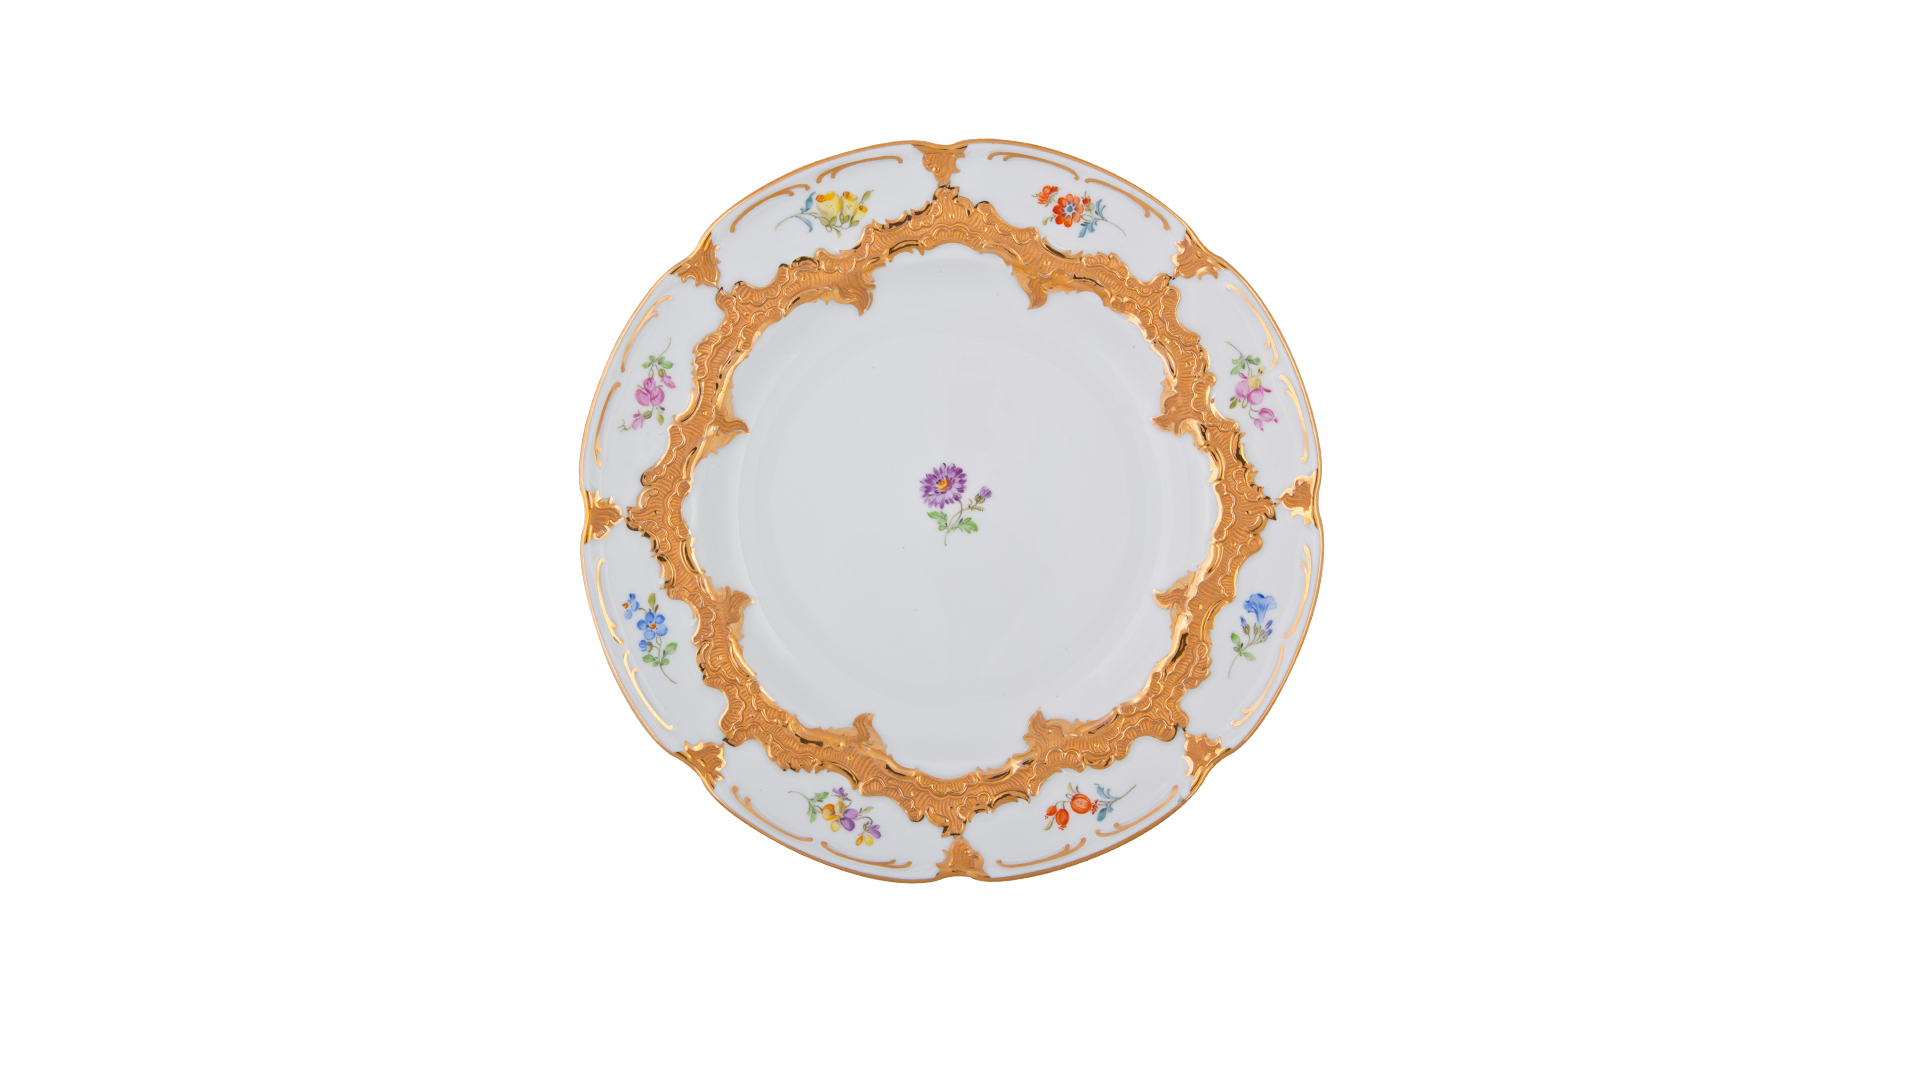 Тарелка суповая Meissen 24 см Форма - Б, россыпь цветов